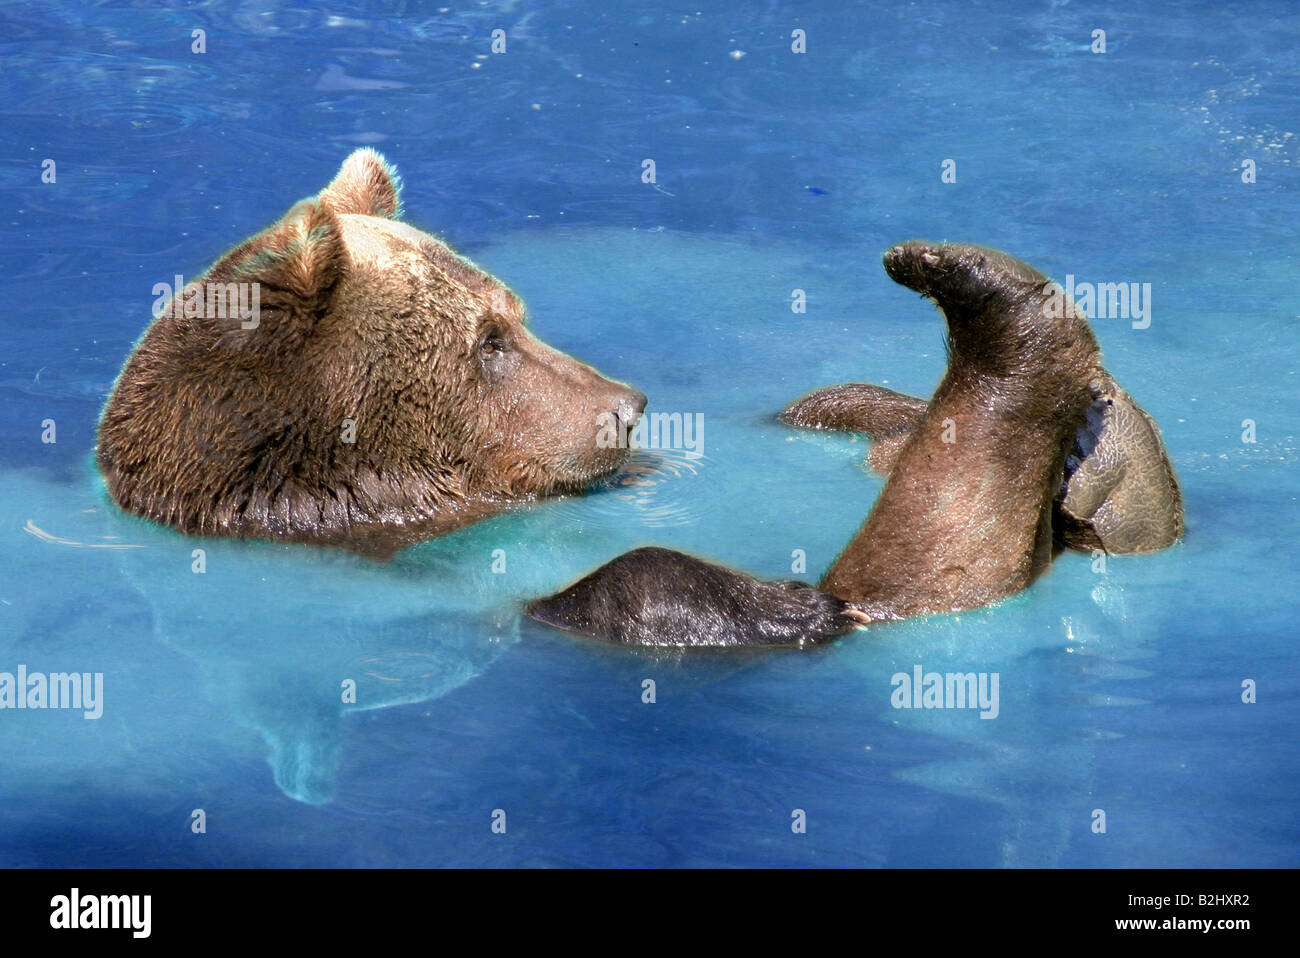 Ours brun (Ursus arctos) carnivora baignoire Bain natation Banque D'Images